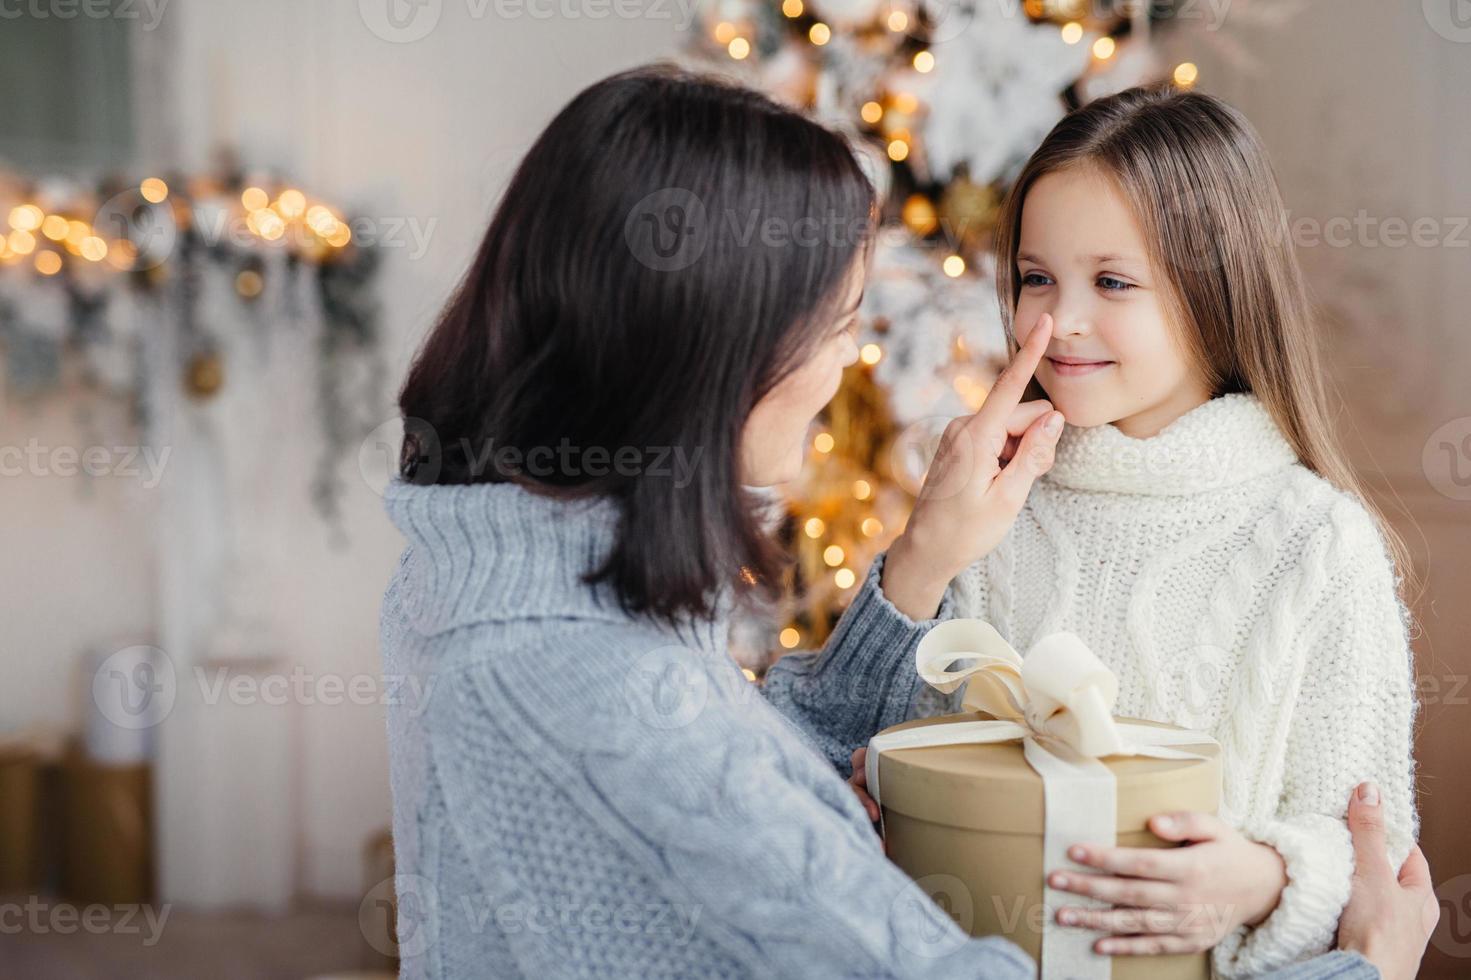 vackert kvinnligt barn med långt hår, bär vit varm tröja, ser ut i mammas ögon, glad över att få present på julen, fira vintersemester i familjekretsen. glad mor och dotter foto